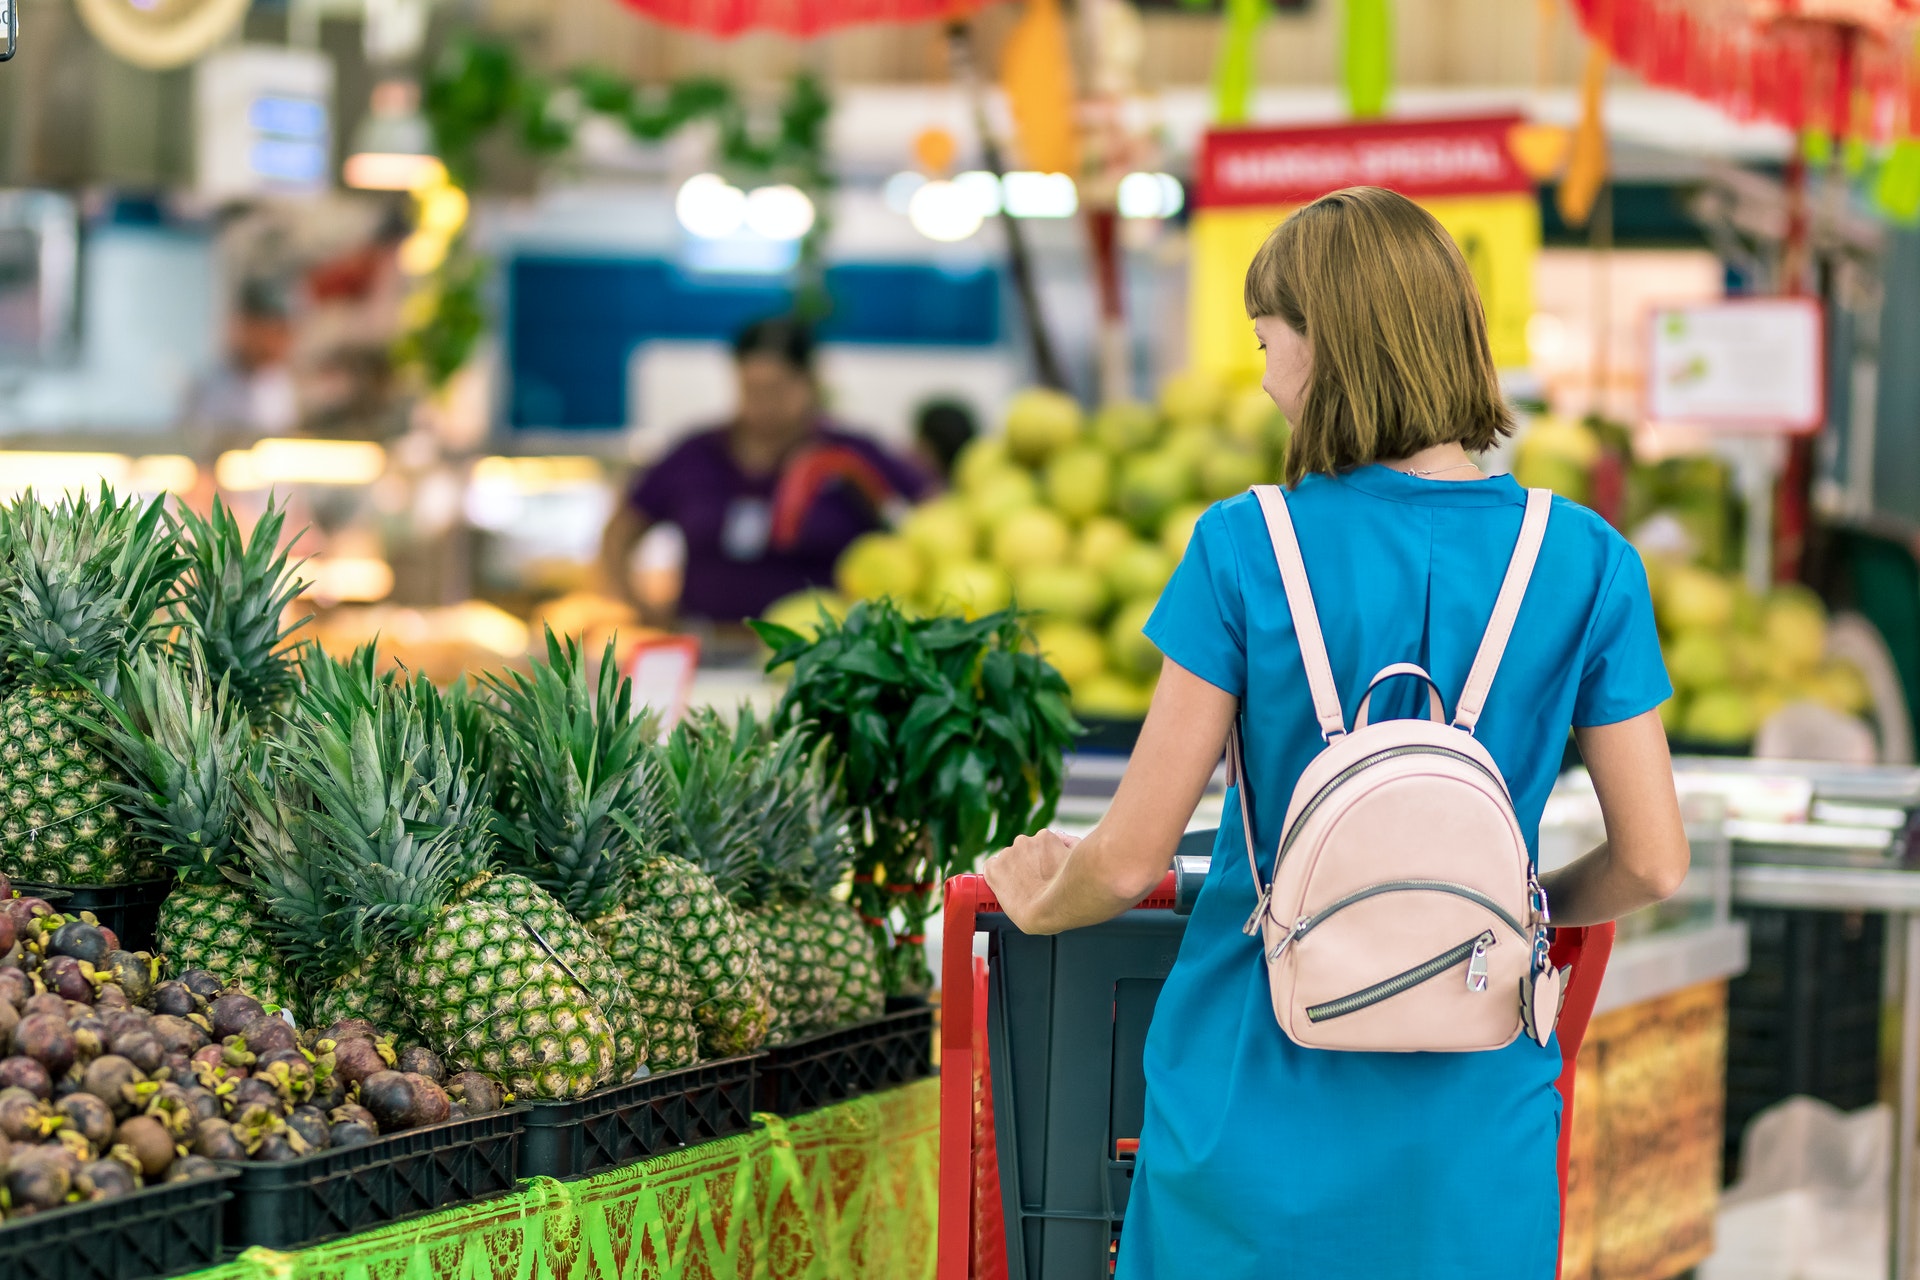 Pesquisa da Fecomércio: Uma mulher faz compras em um supermercado. Ela é branca, usa cabelo loiro e curto e um vestido azul e mochila. Está de costas para a câmera observando uma prateleira com abacaxis.